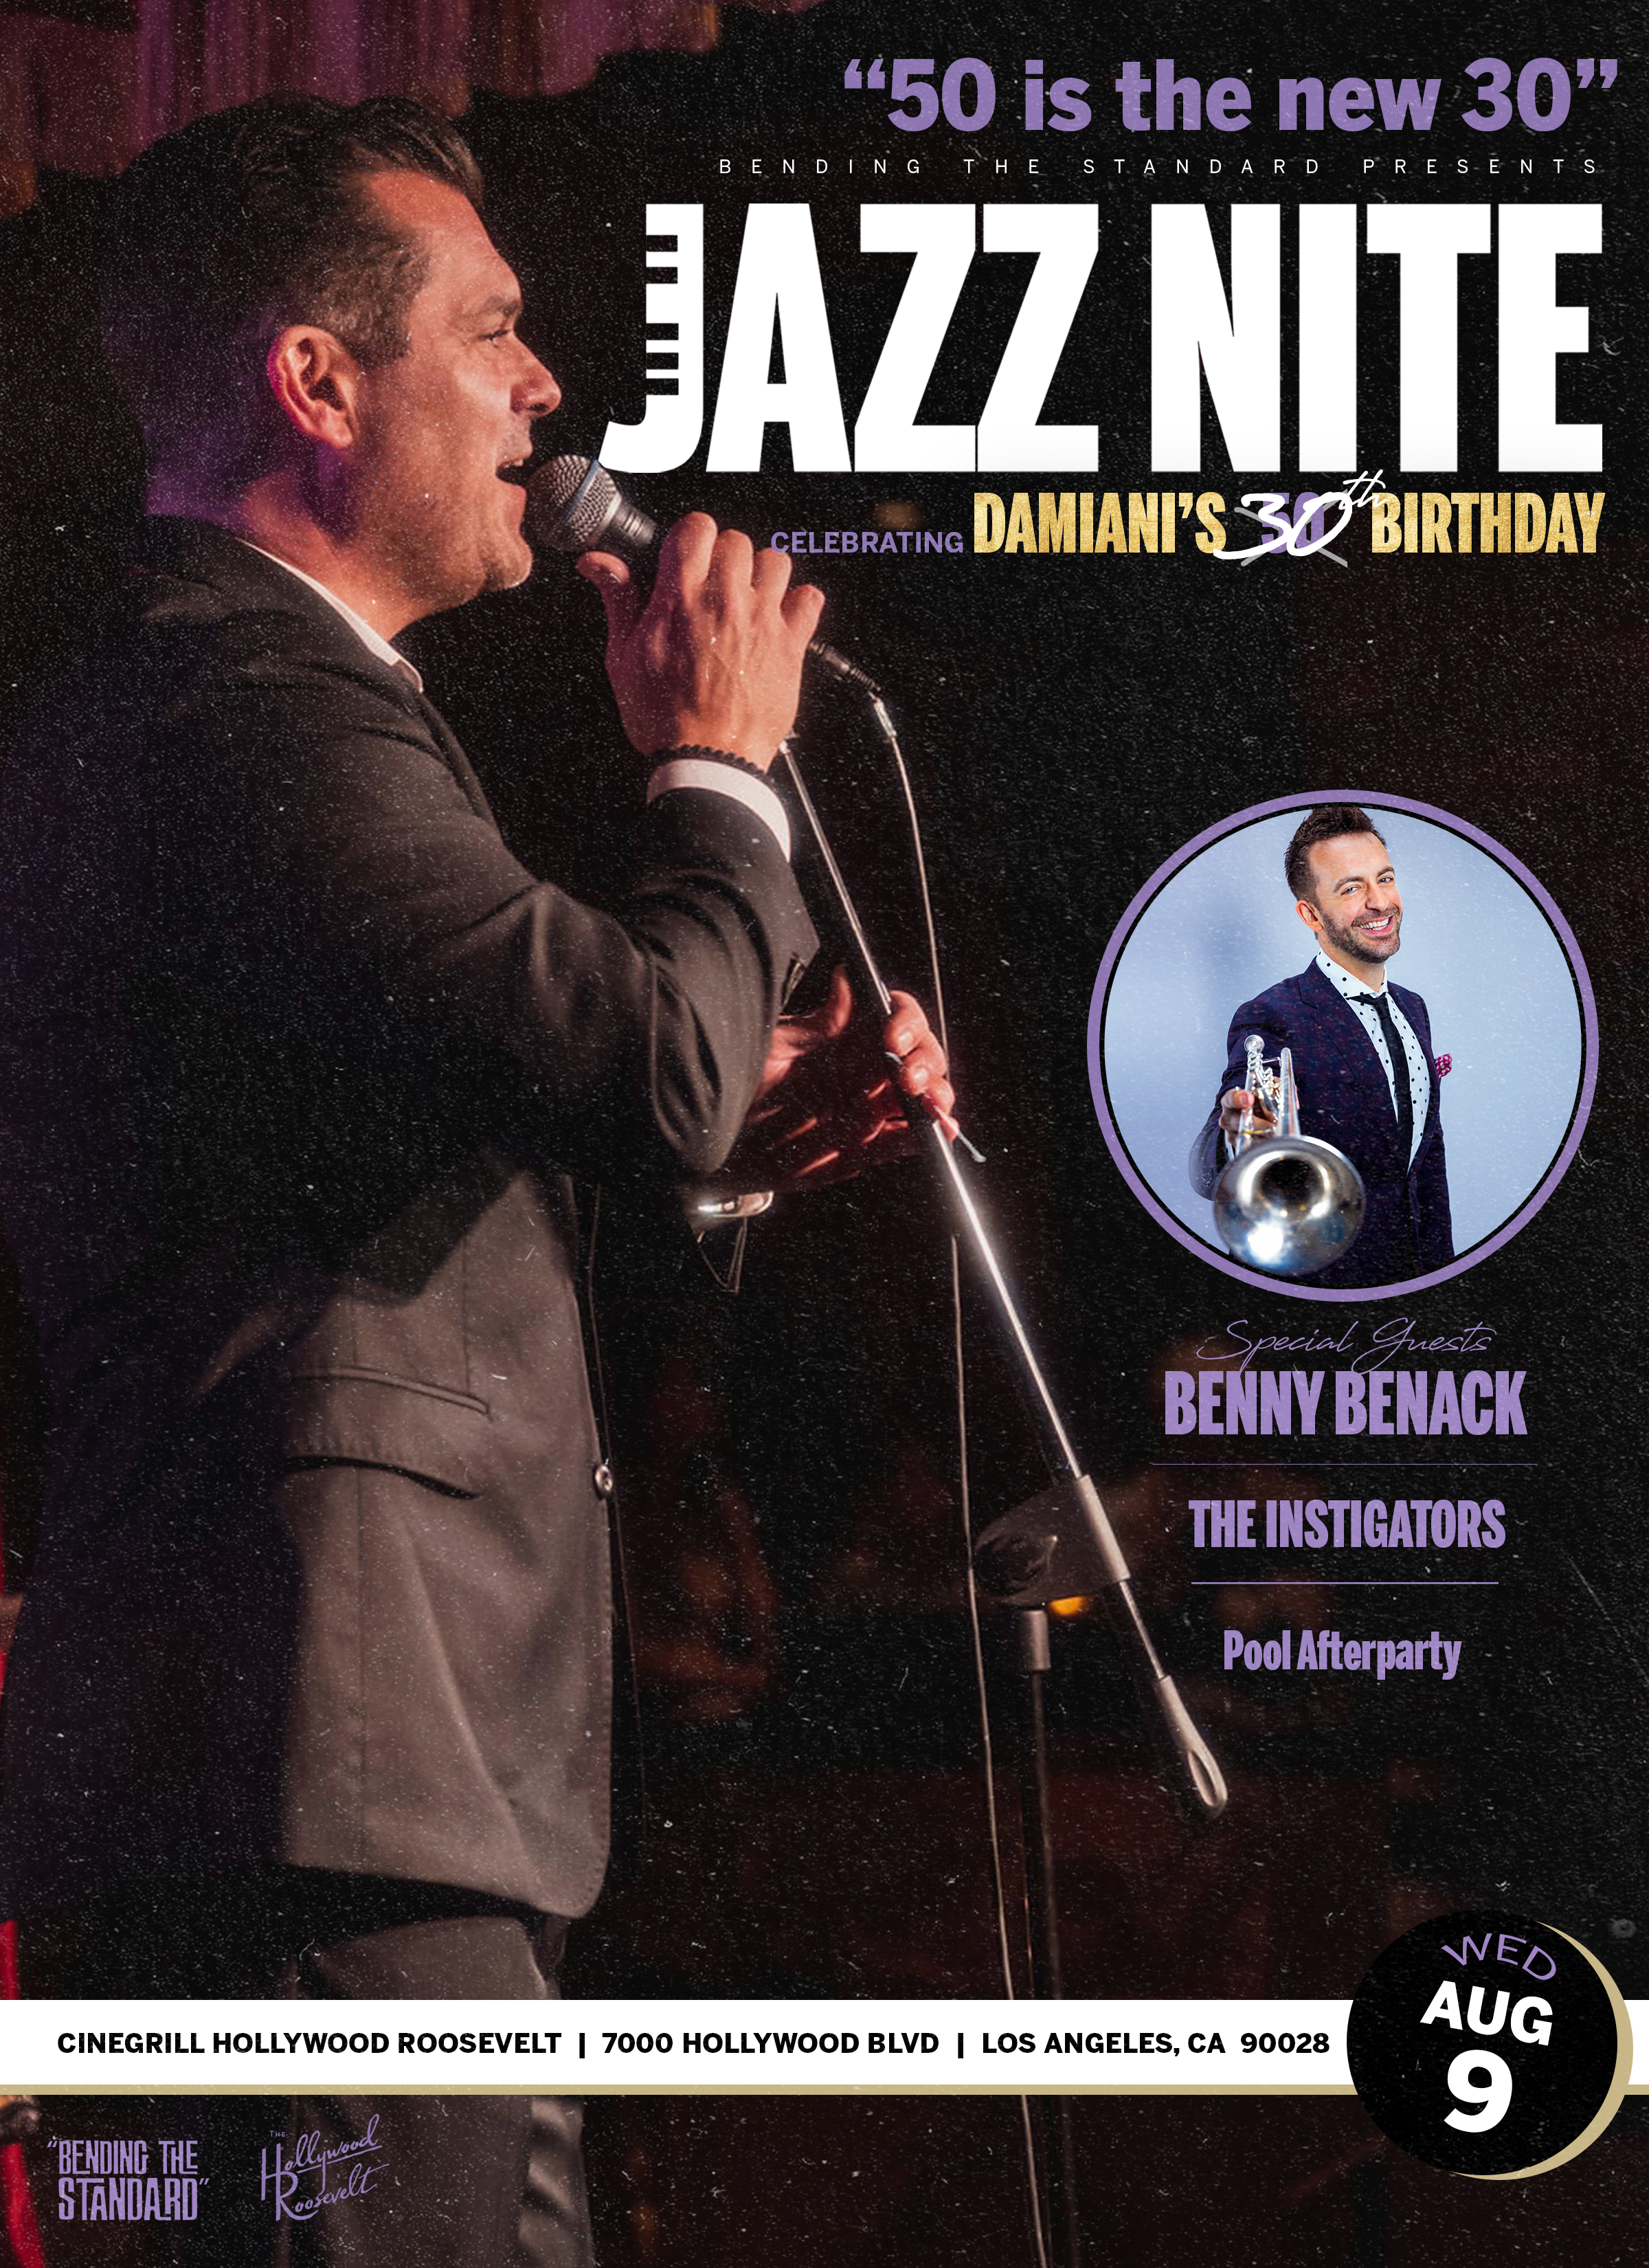 Damiani's West Coast BDAY JazzNite w/ Benny Benack - CINEGRILL HOLLYWOOD